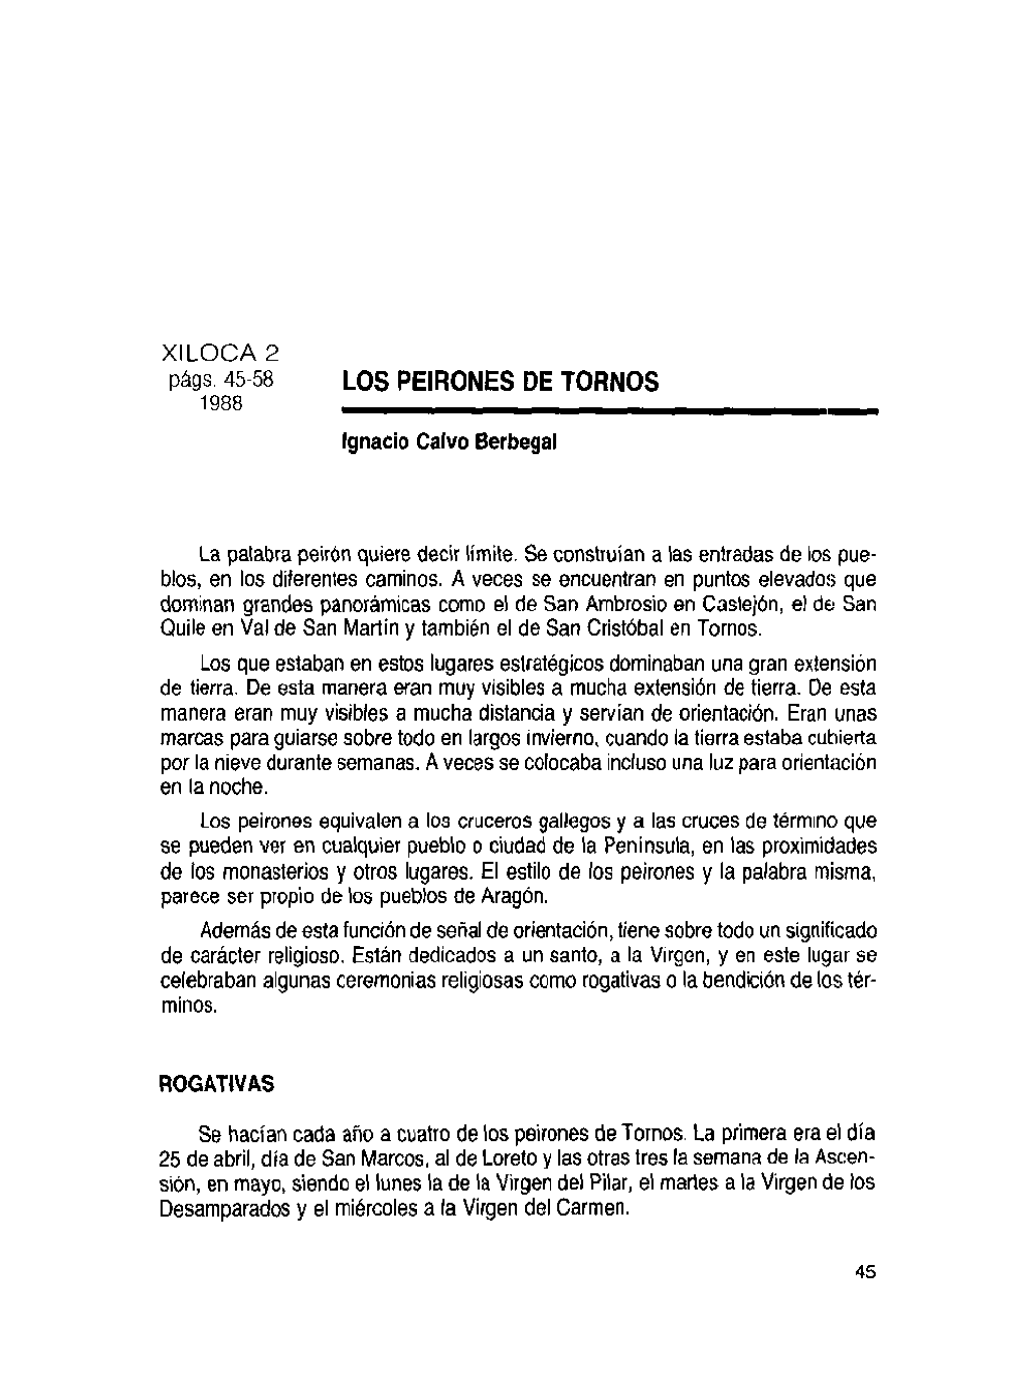 LOS PEIRONES DE TORNOS 1988 - Ignacio Calvo Berbegal